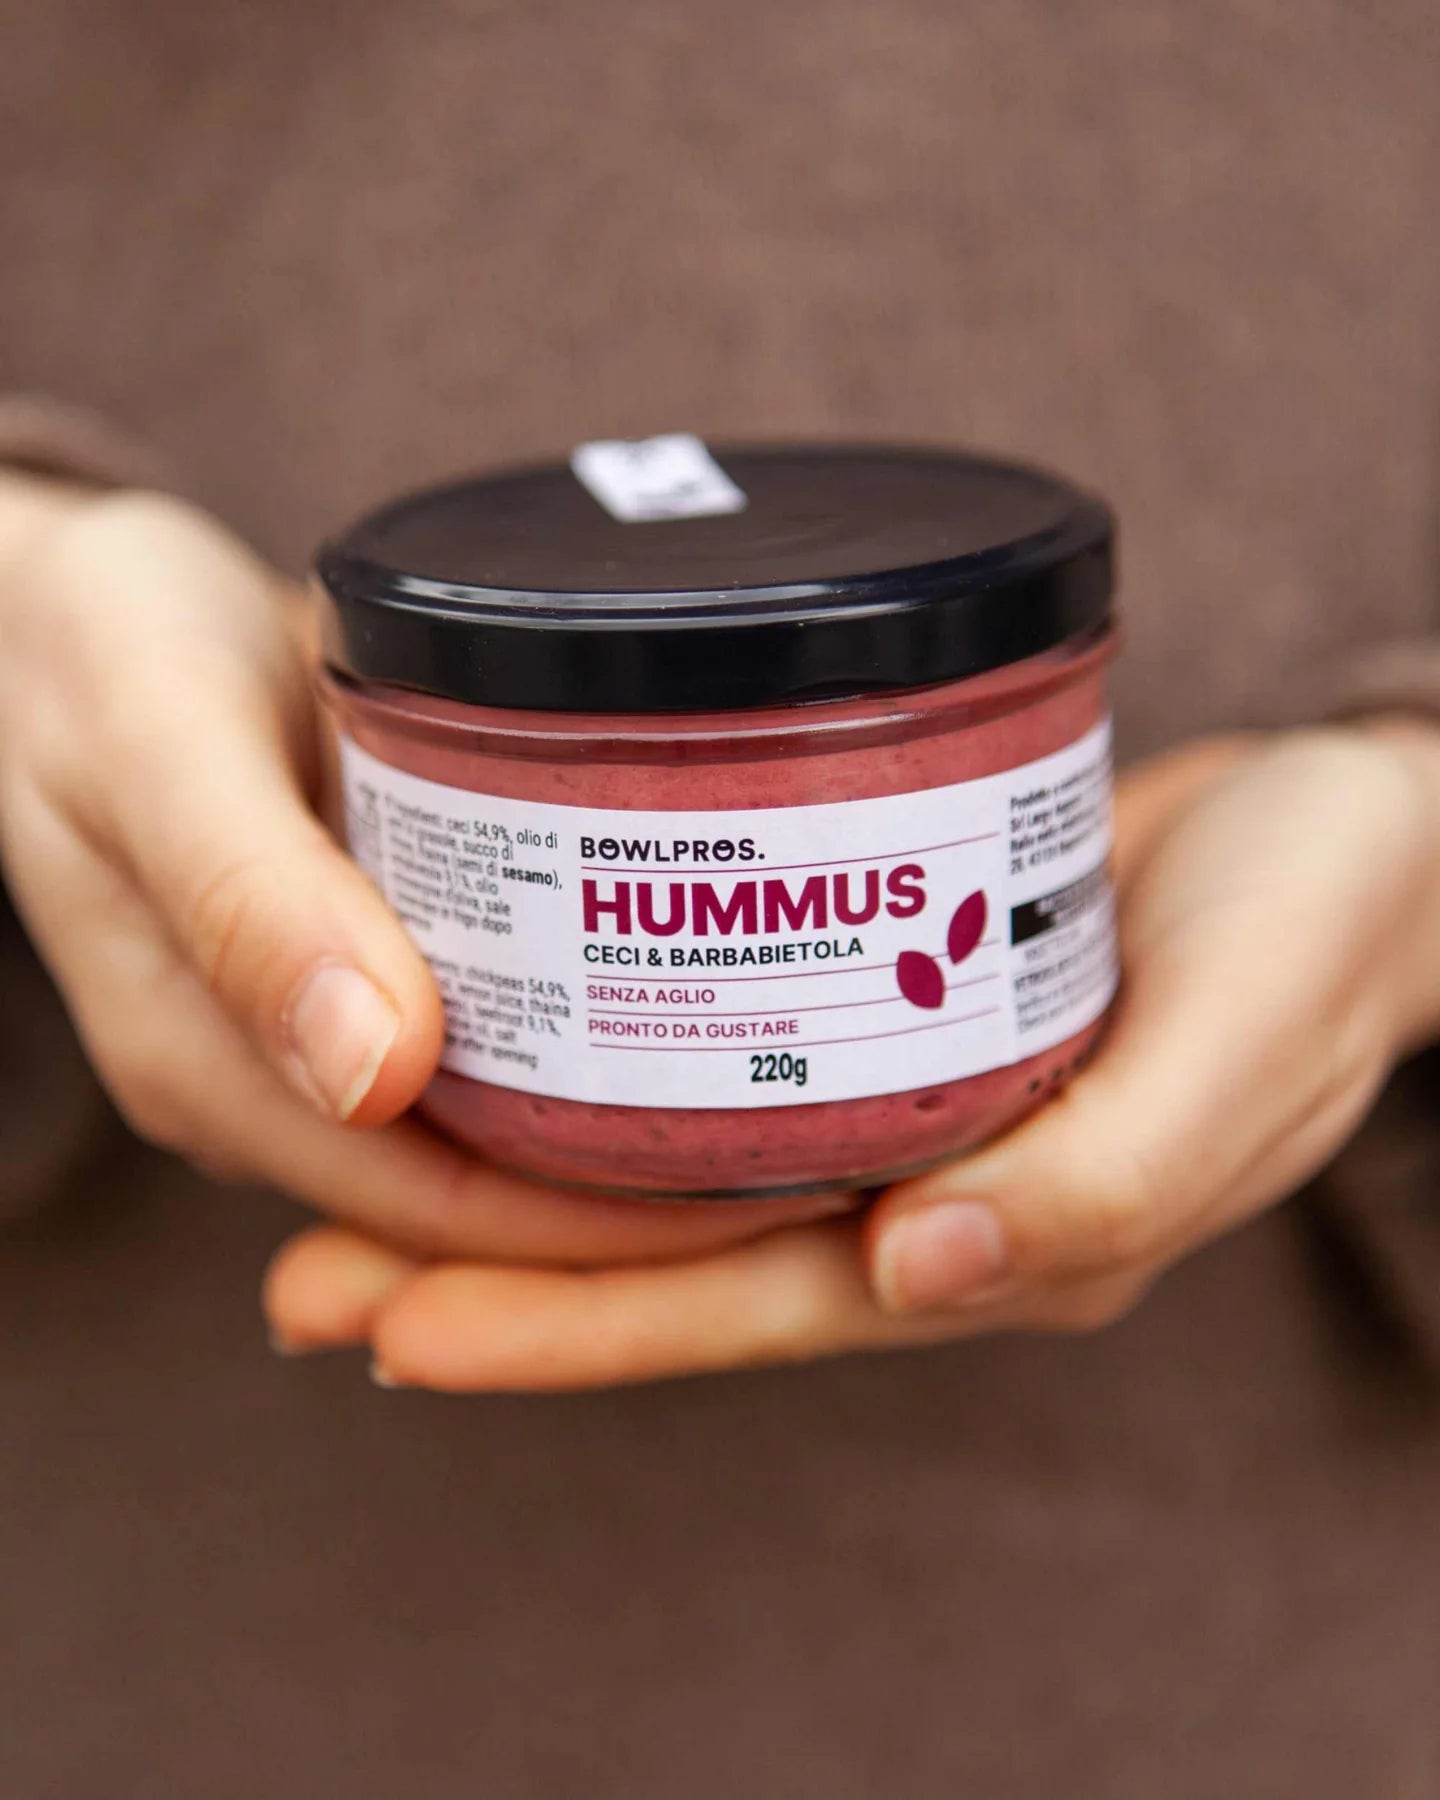 Hummus di Ceci & Barbabietola